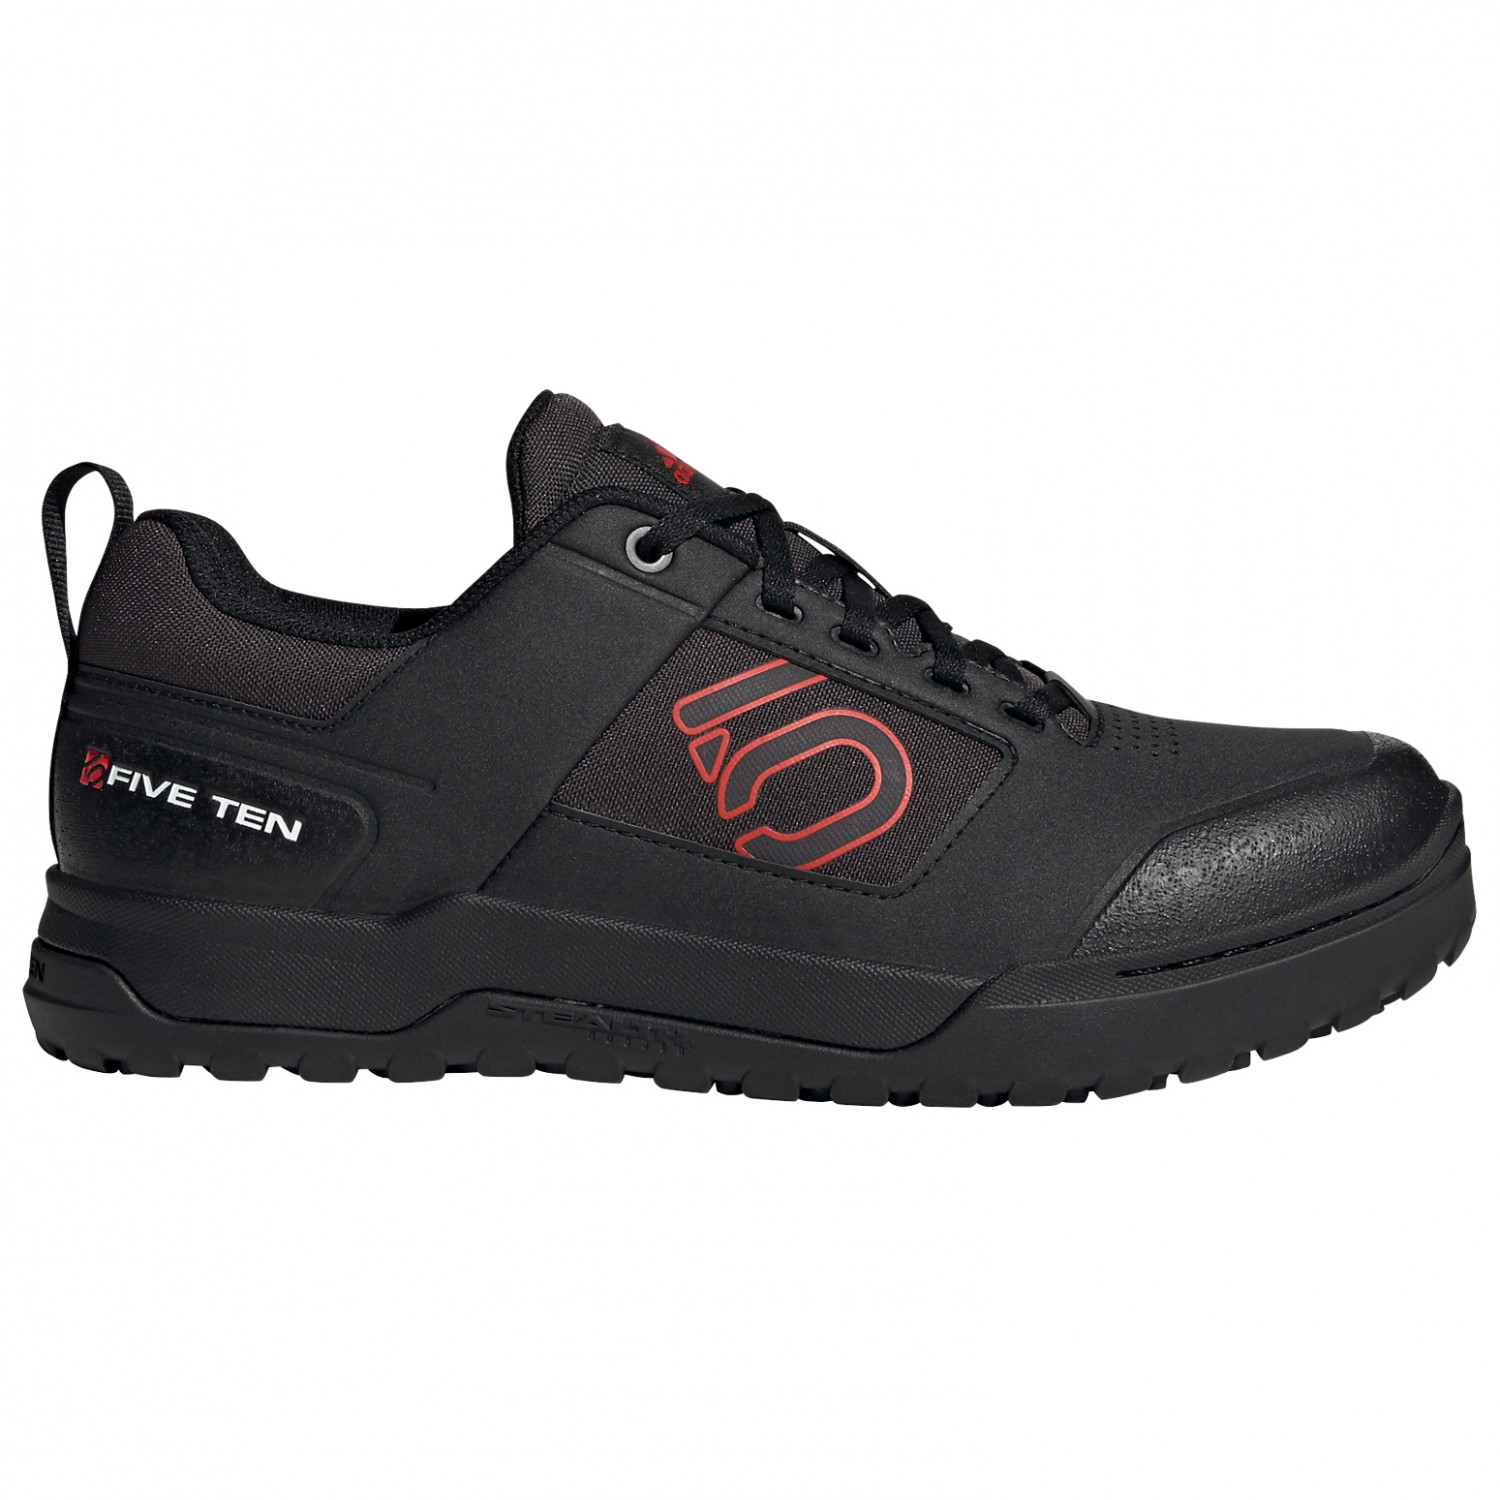 Велосипедная обувь Five Ten Impact Pro, цвет Core Black/Red/Ftwr White виниловая пластинка шарль мюнш дирижер набор из 2